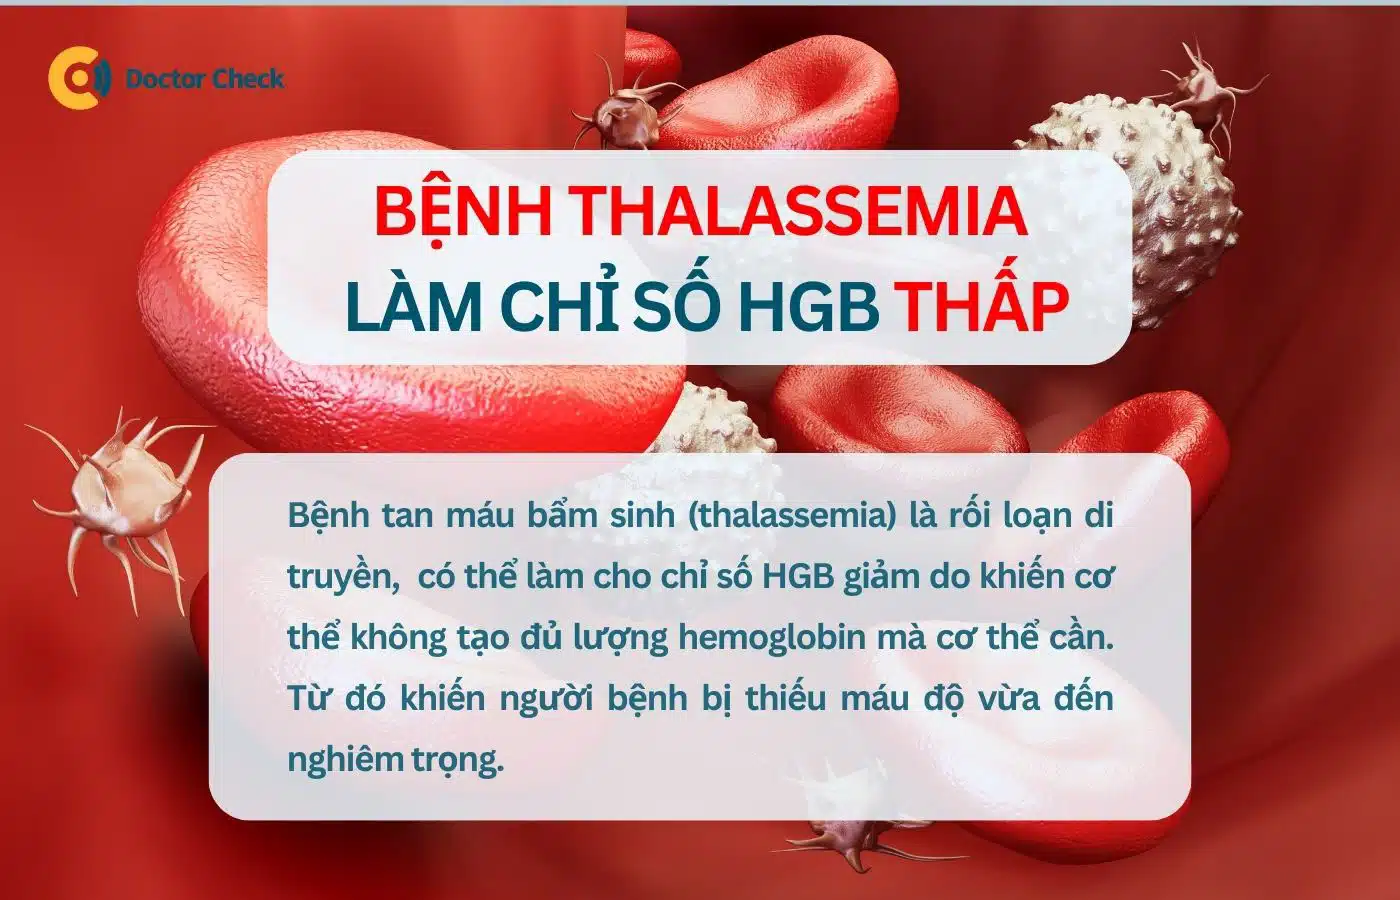 Bệnh tan máu bẩm sinh (thalassemia) làm giảm lượng HGB trong máu